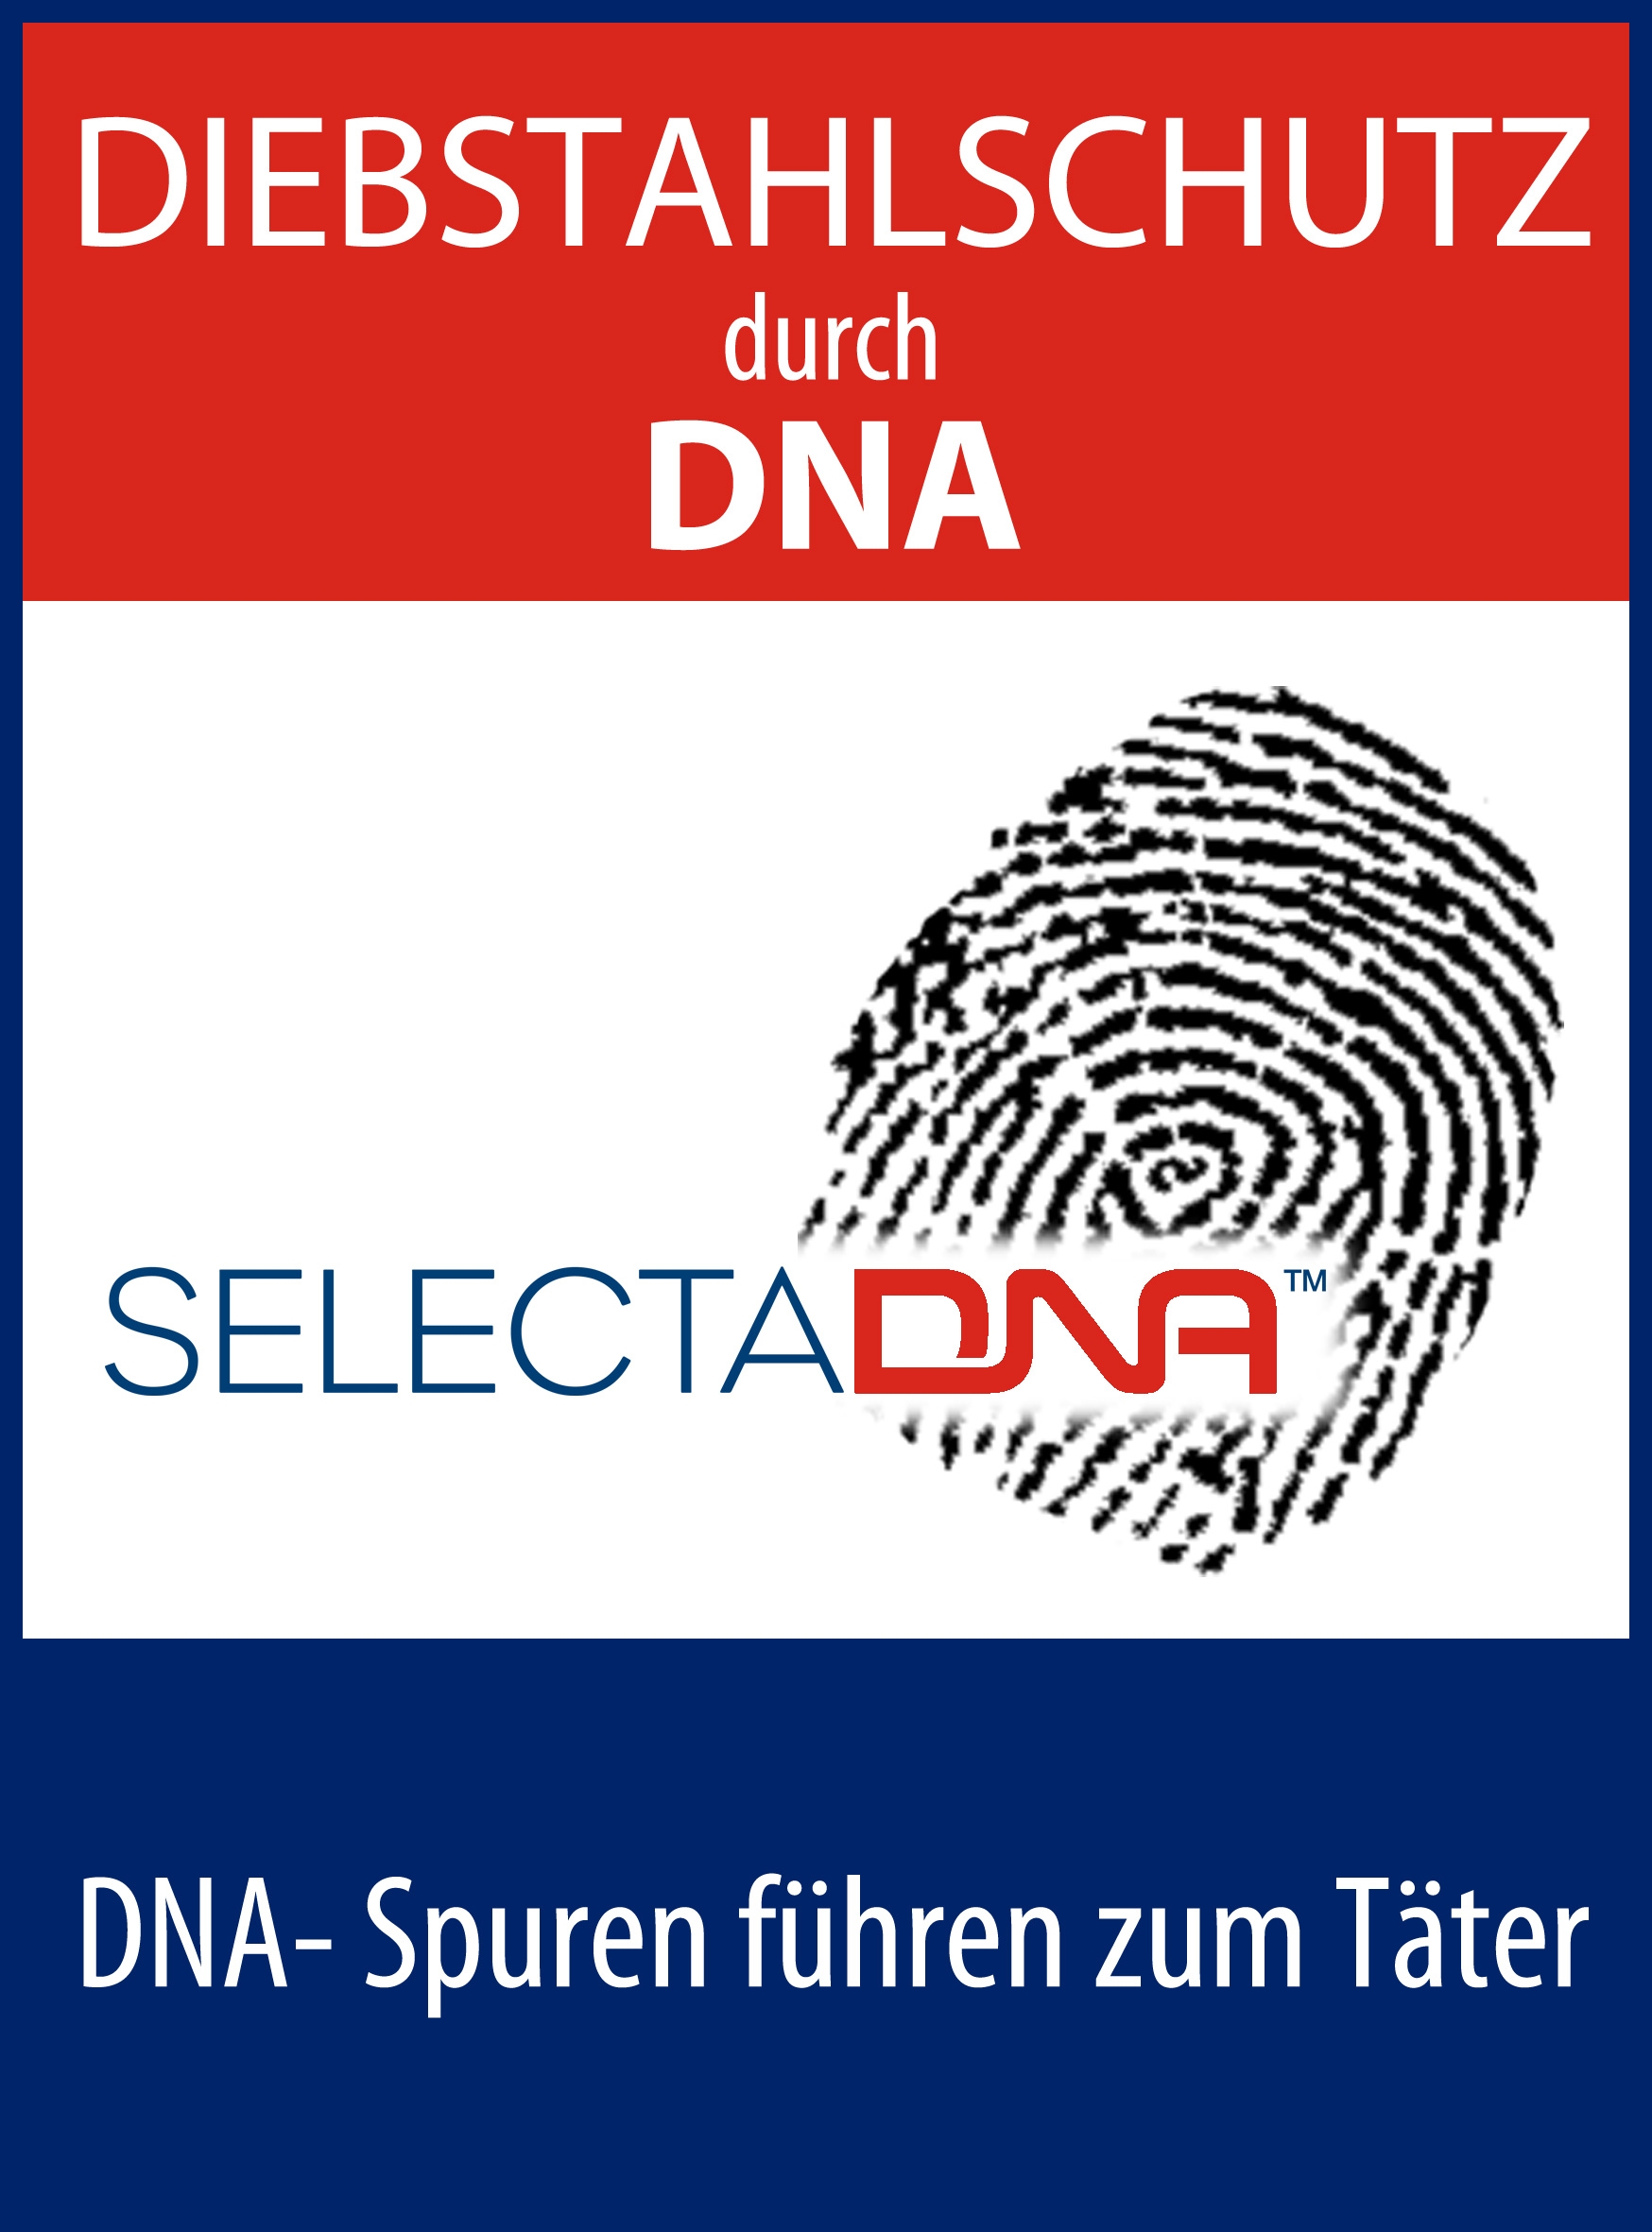 Künstliche DNA - Aufkleber Diebstahlschutz (doppelseitig bedruckt